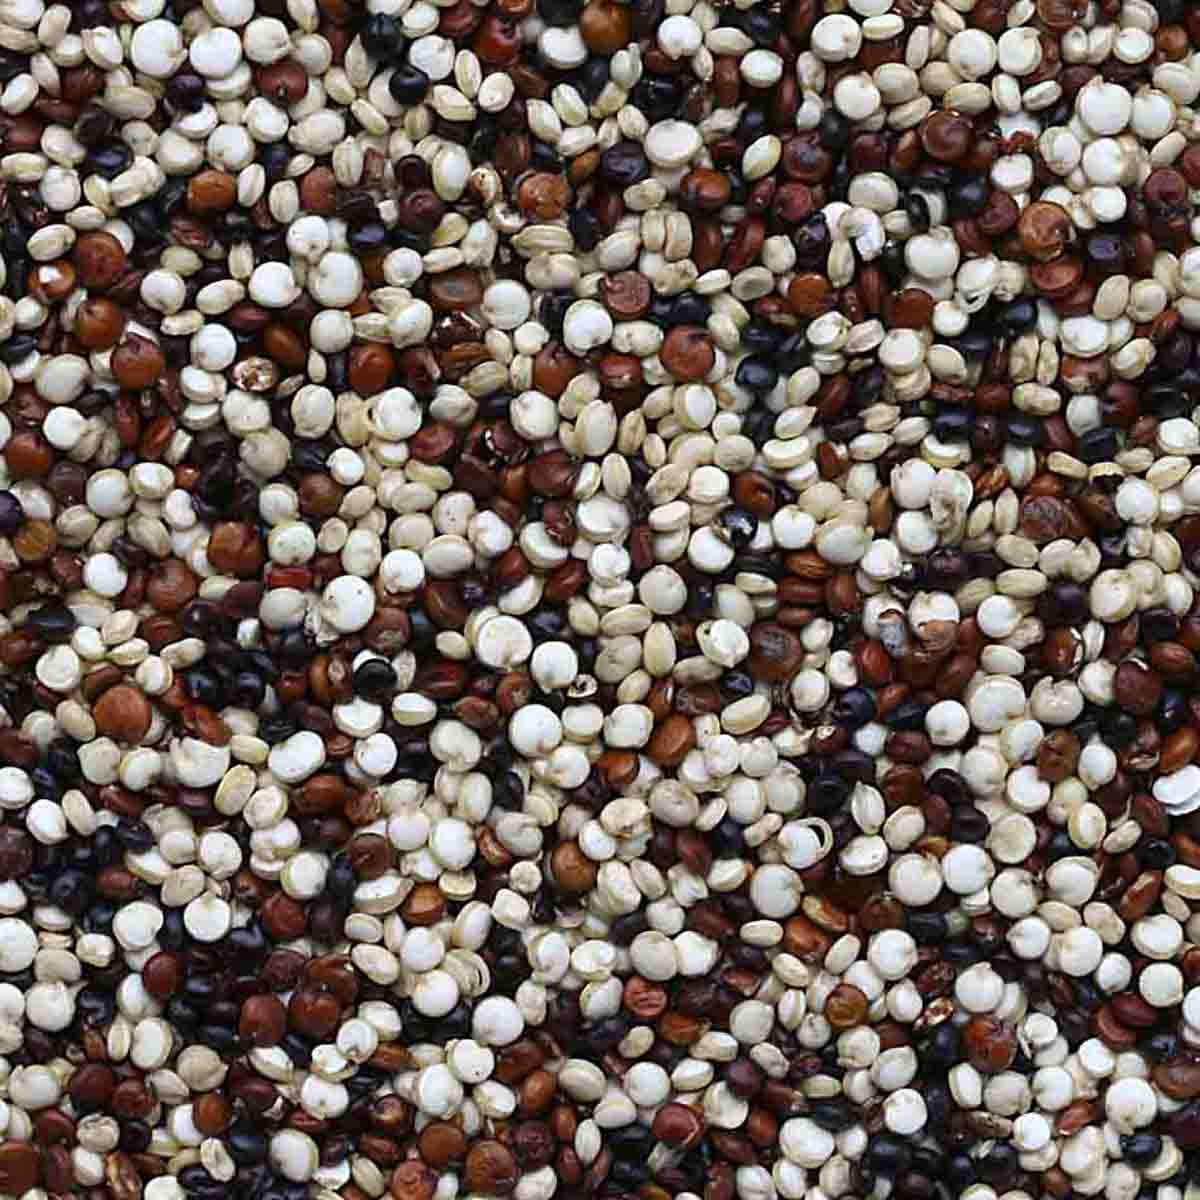 Multi-colored quinoa seeds.